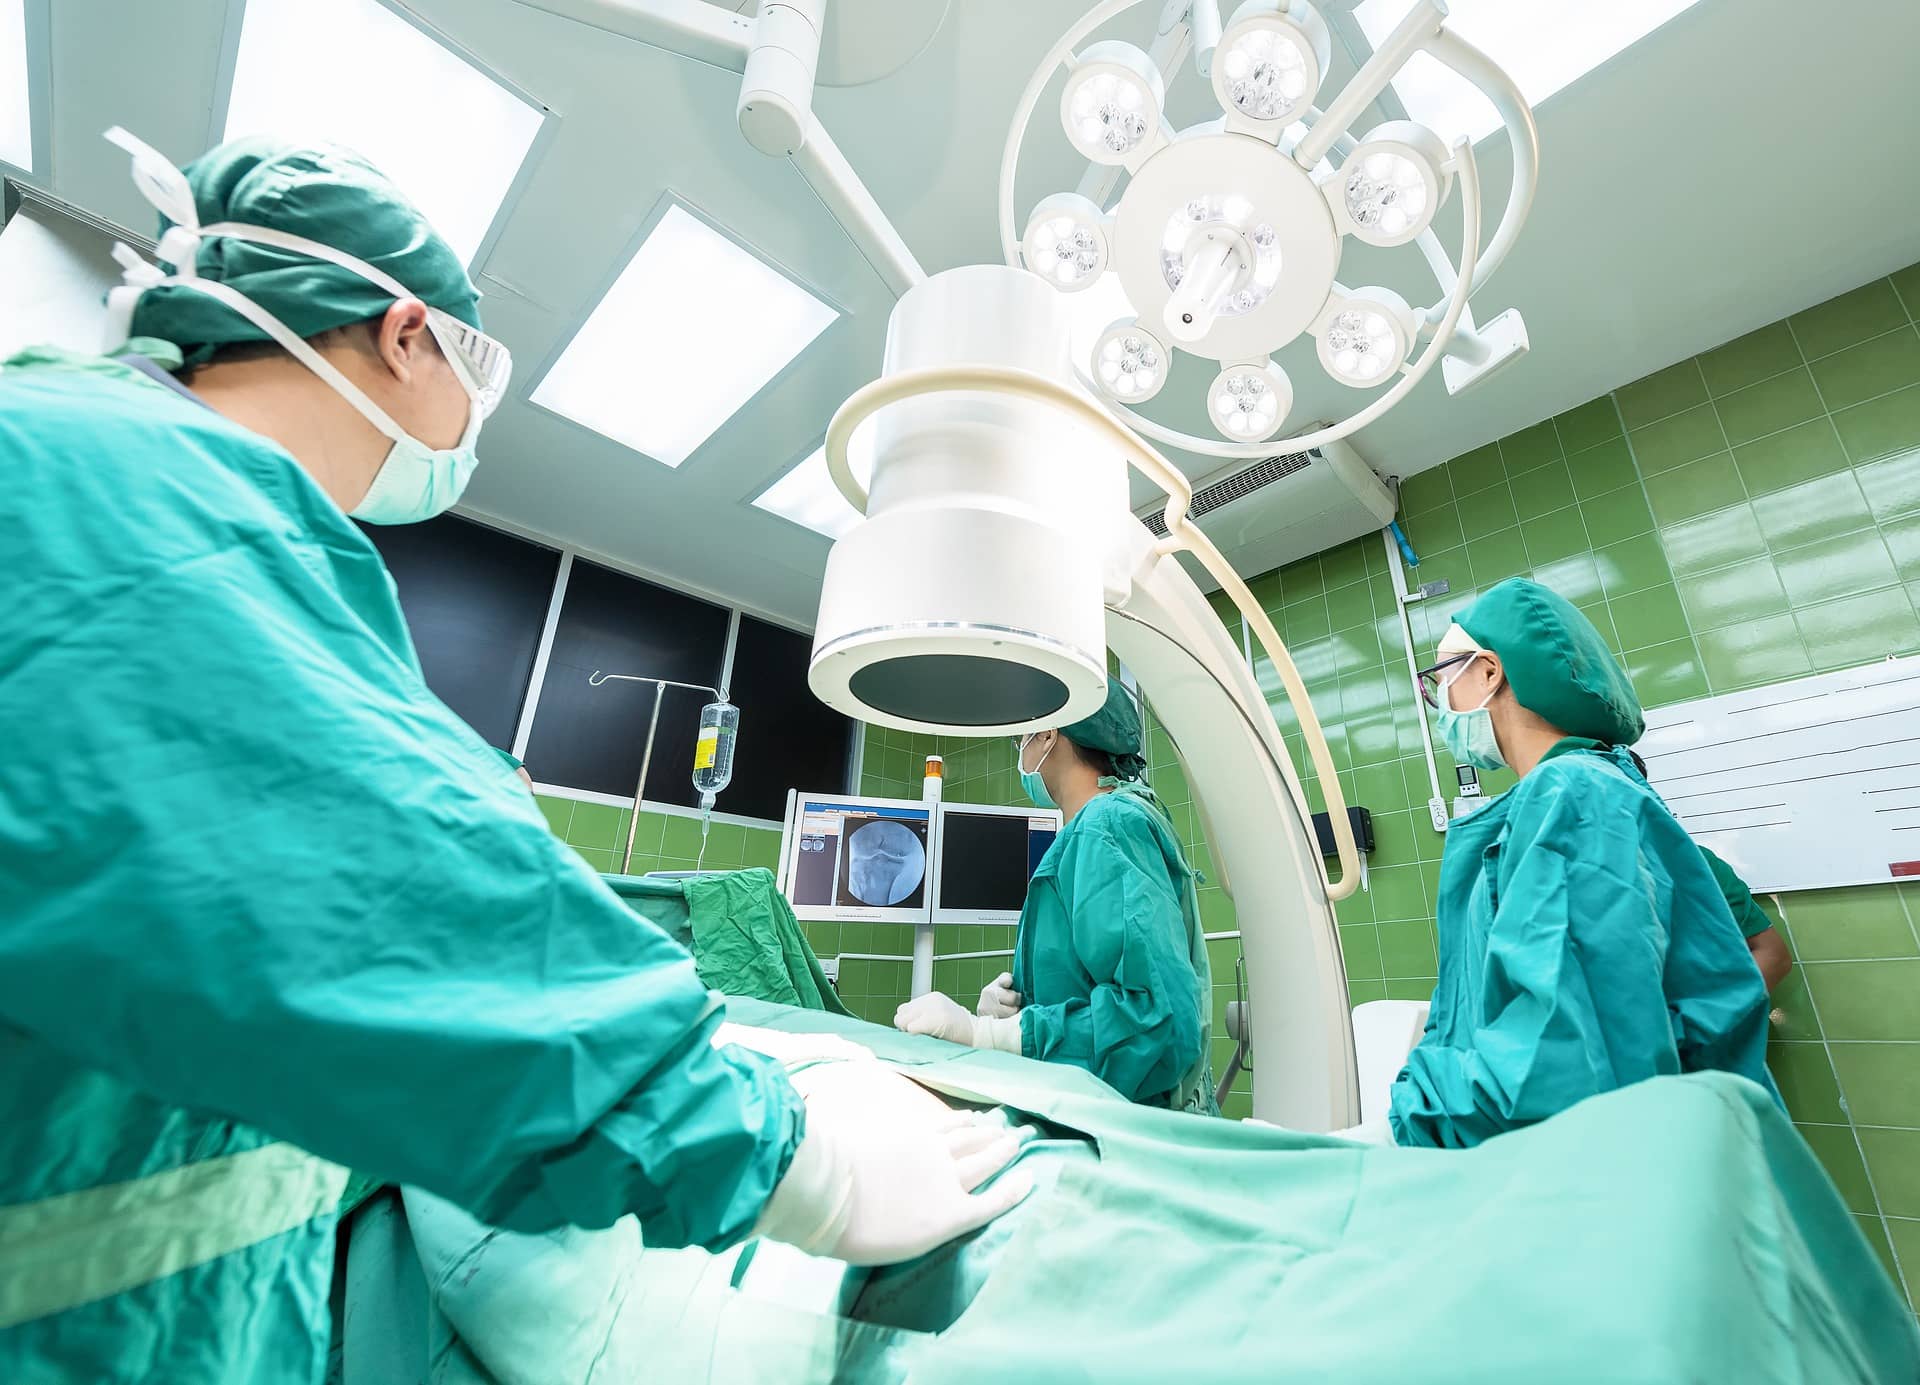 Surgeons prepare in operation theatre